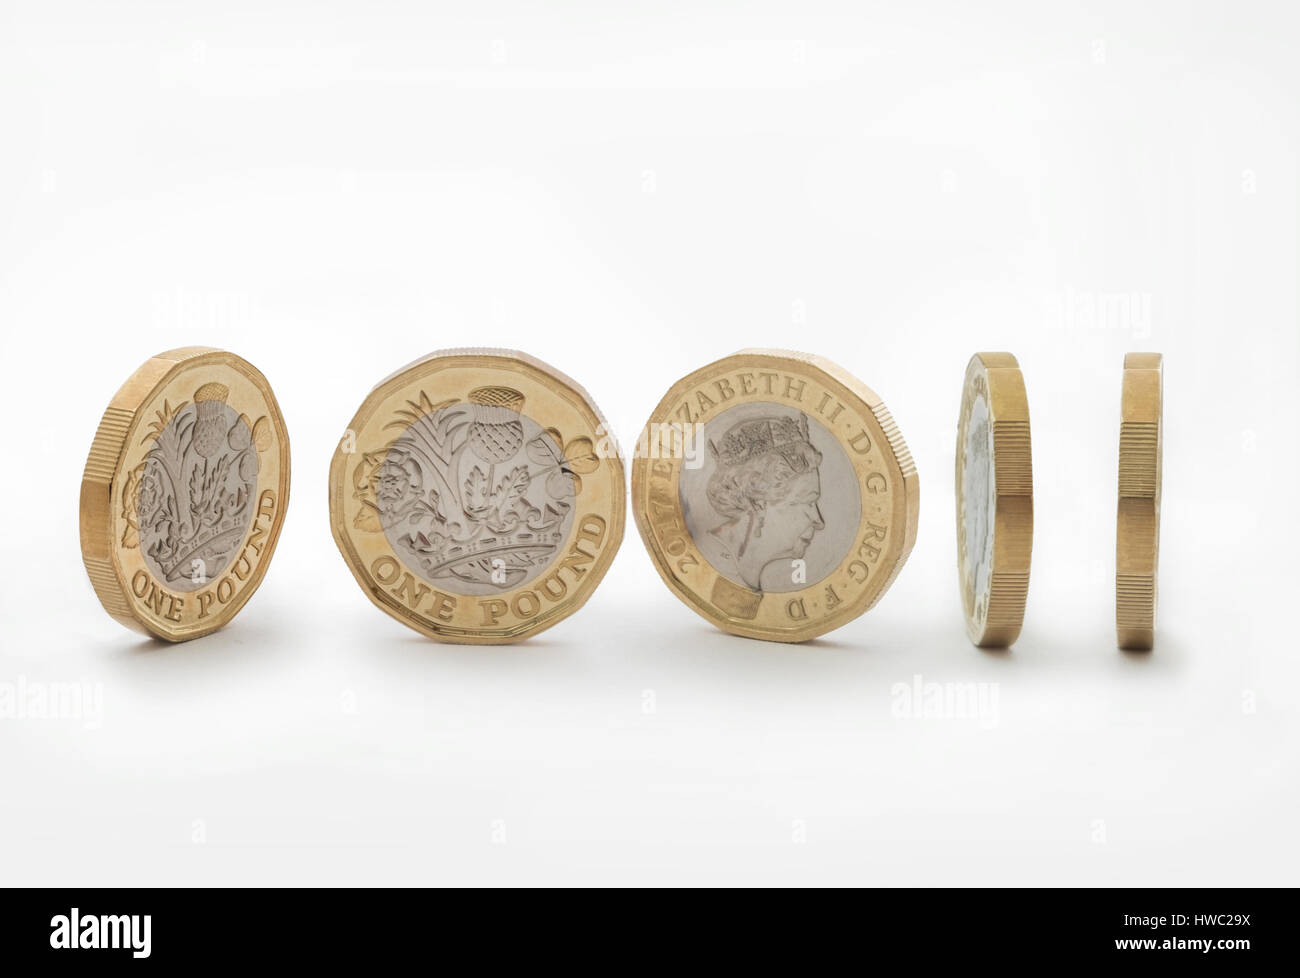 Nuovo design 2017 pound coin Foto Stock